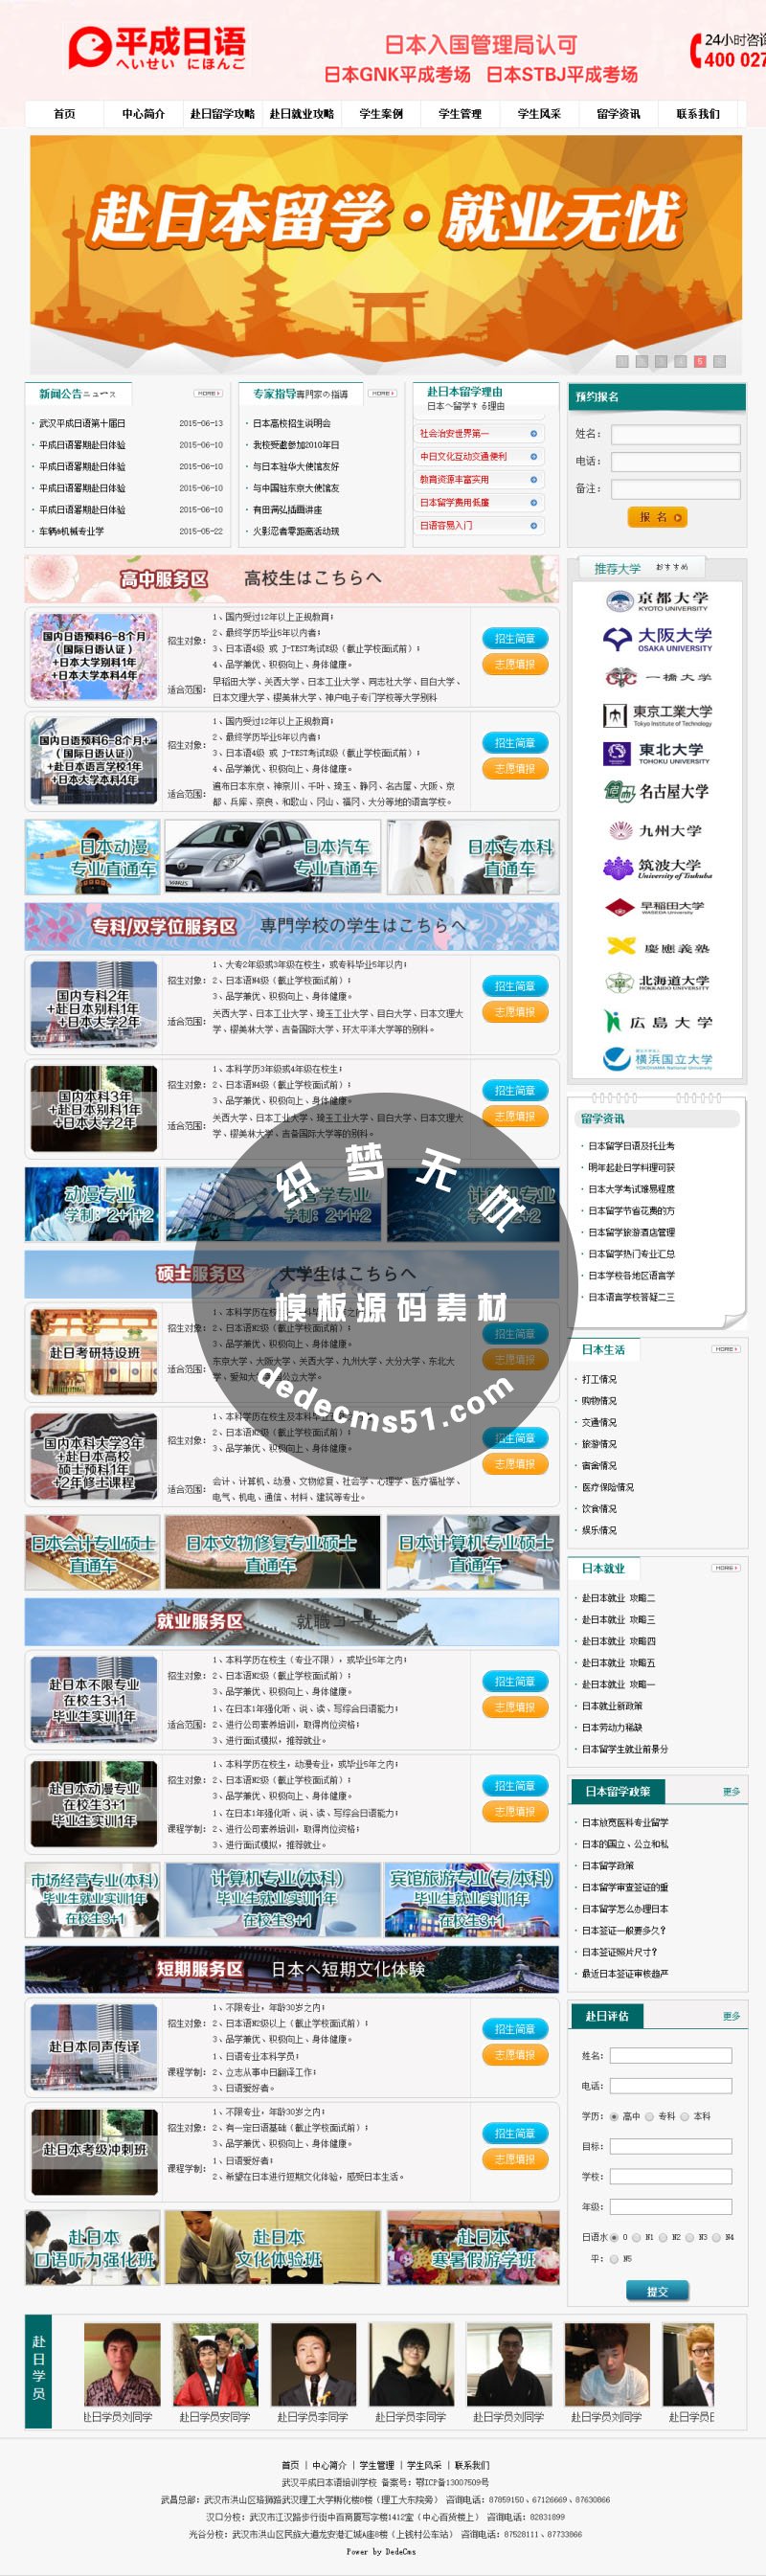 日语培训机构网站织梦模板dede源码免费模板下载